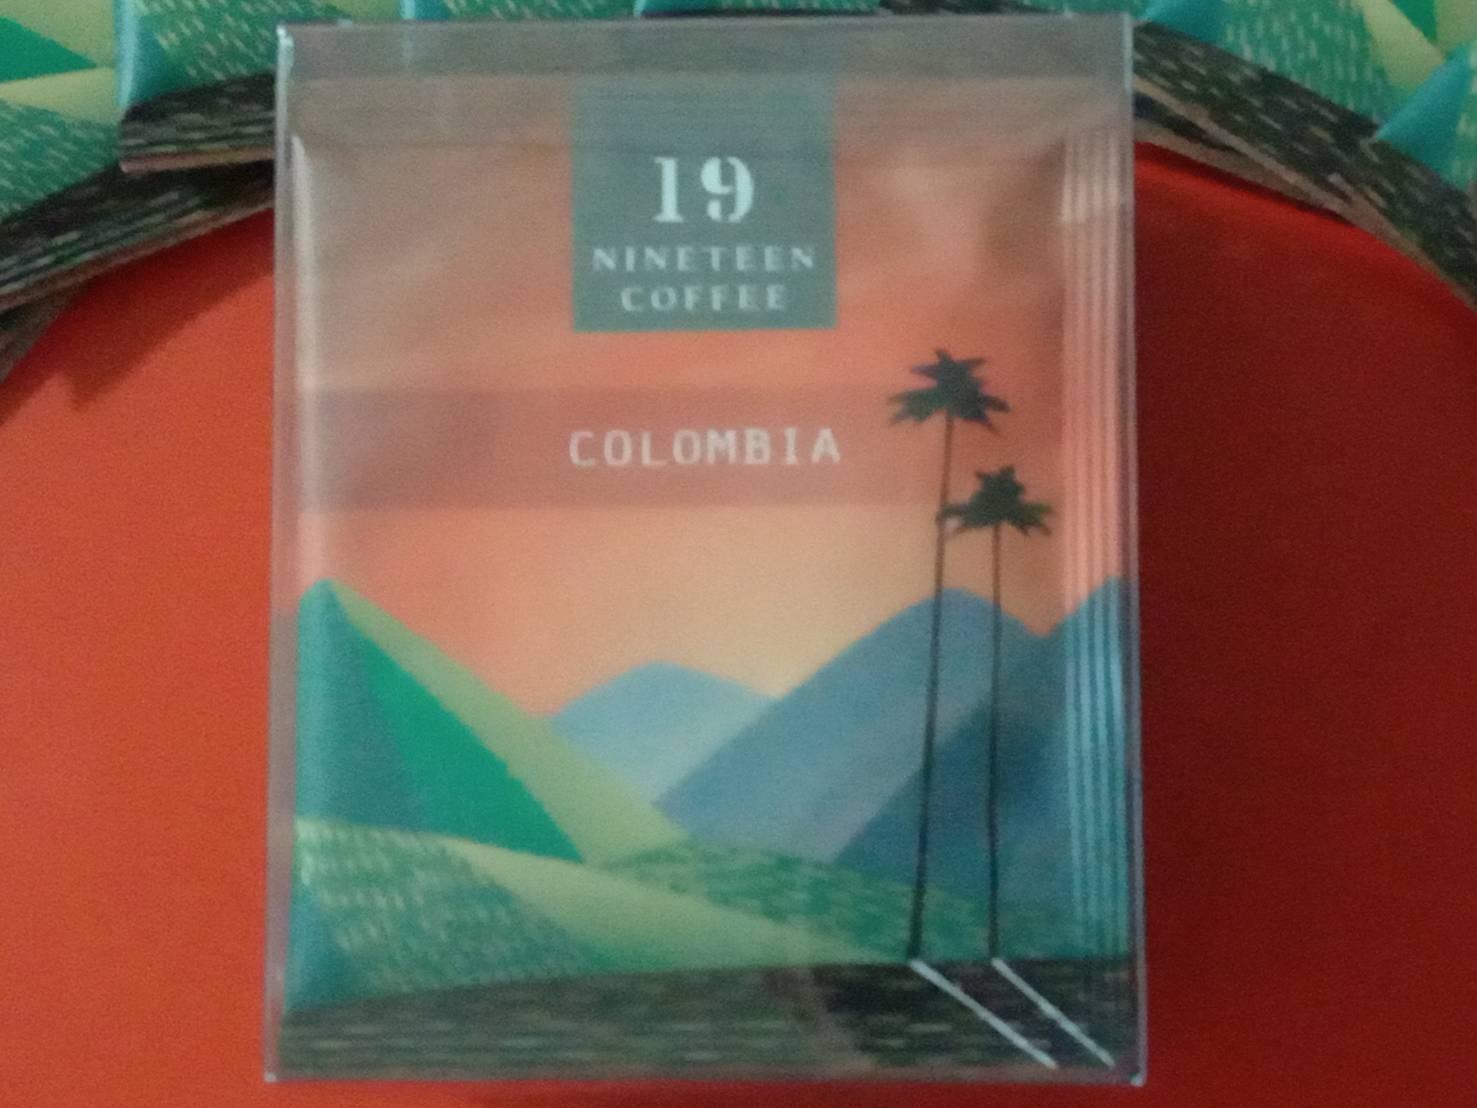 19水洗哥倫比亞濾掛式咖啡